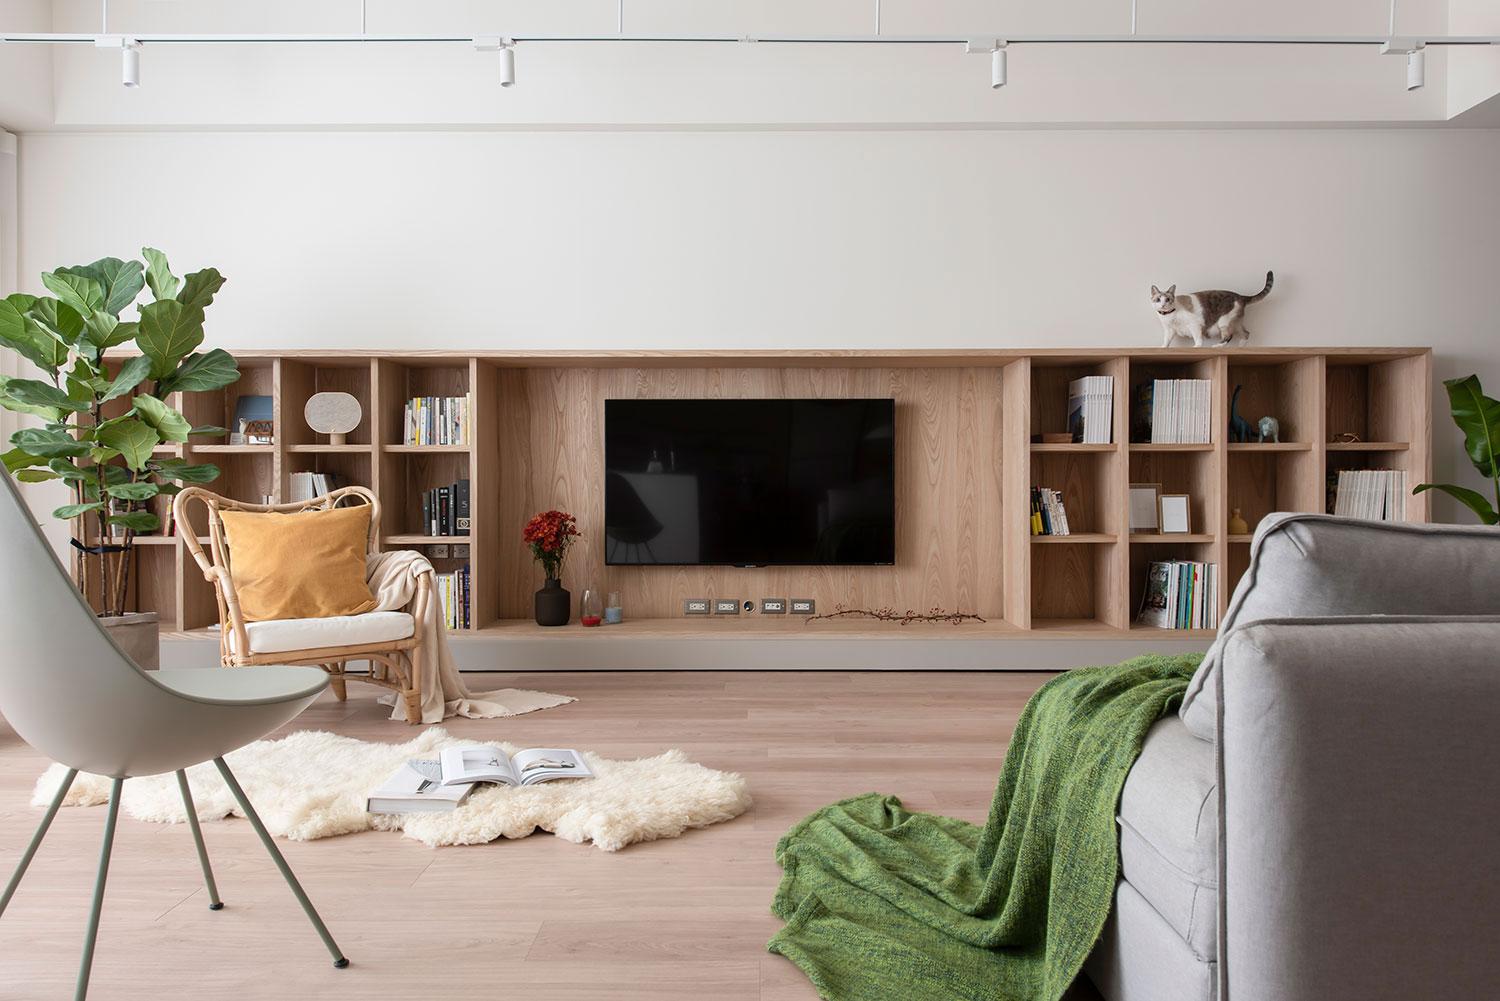 Thiết kế nội thất theo phong cách Scandinavian - Cộng Design